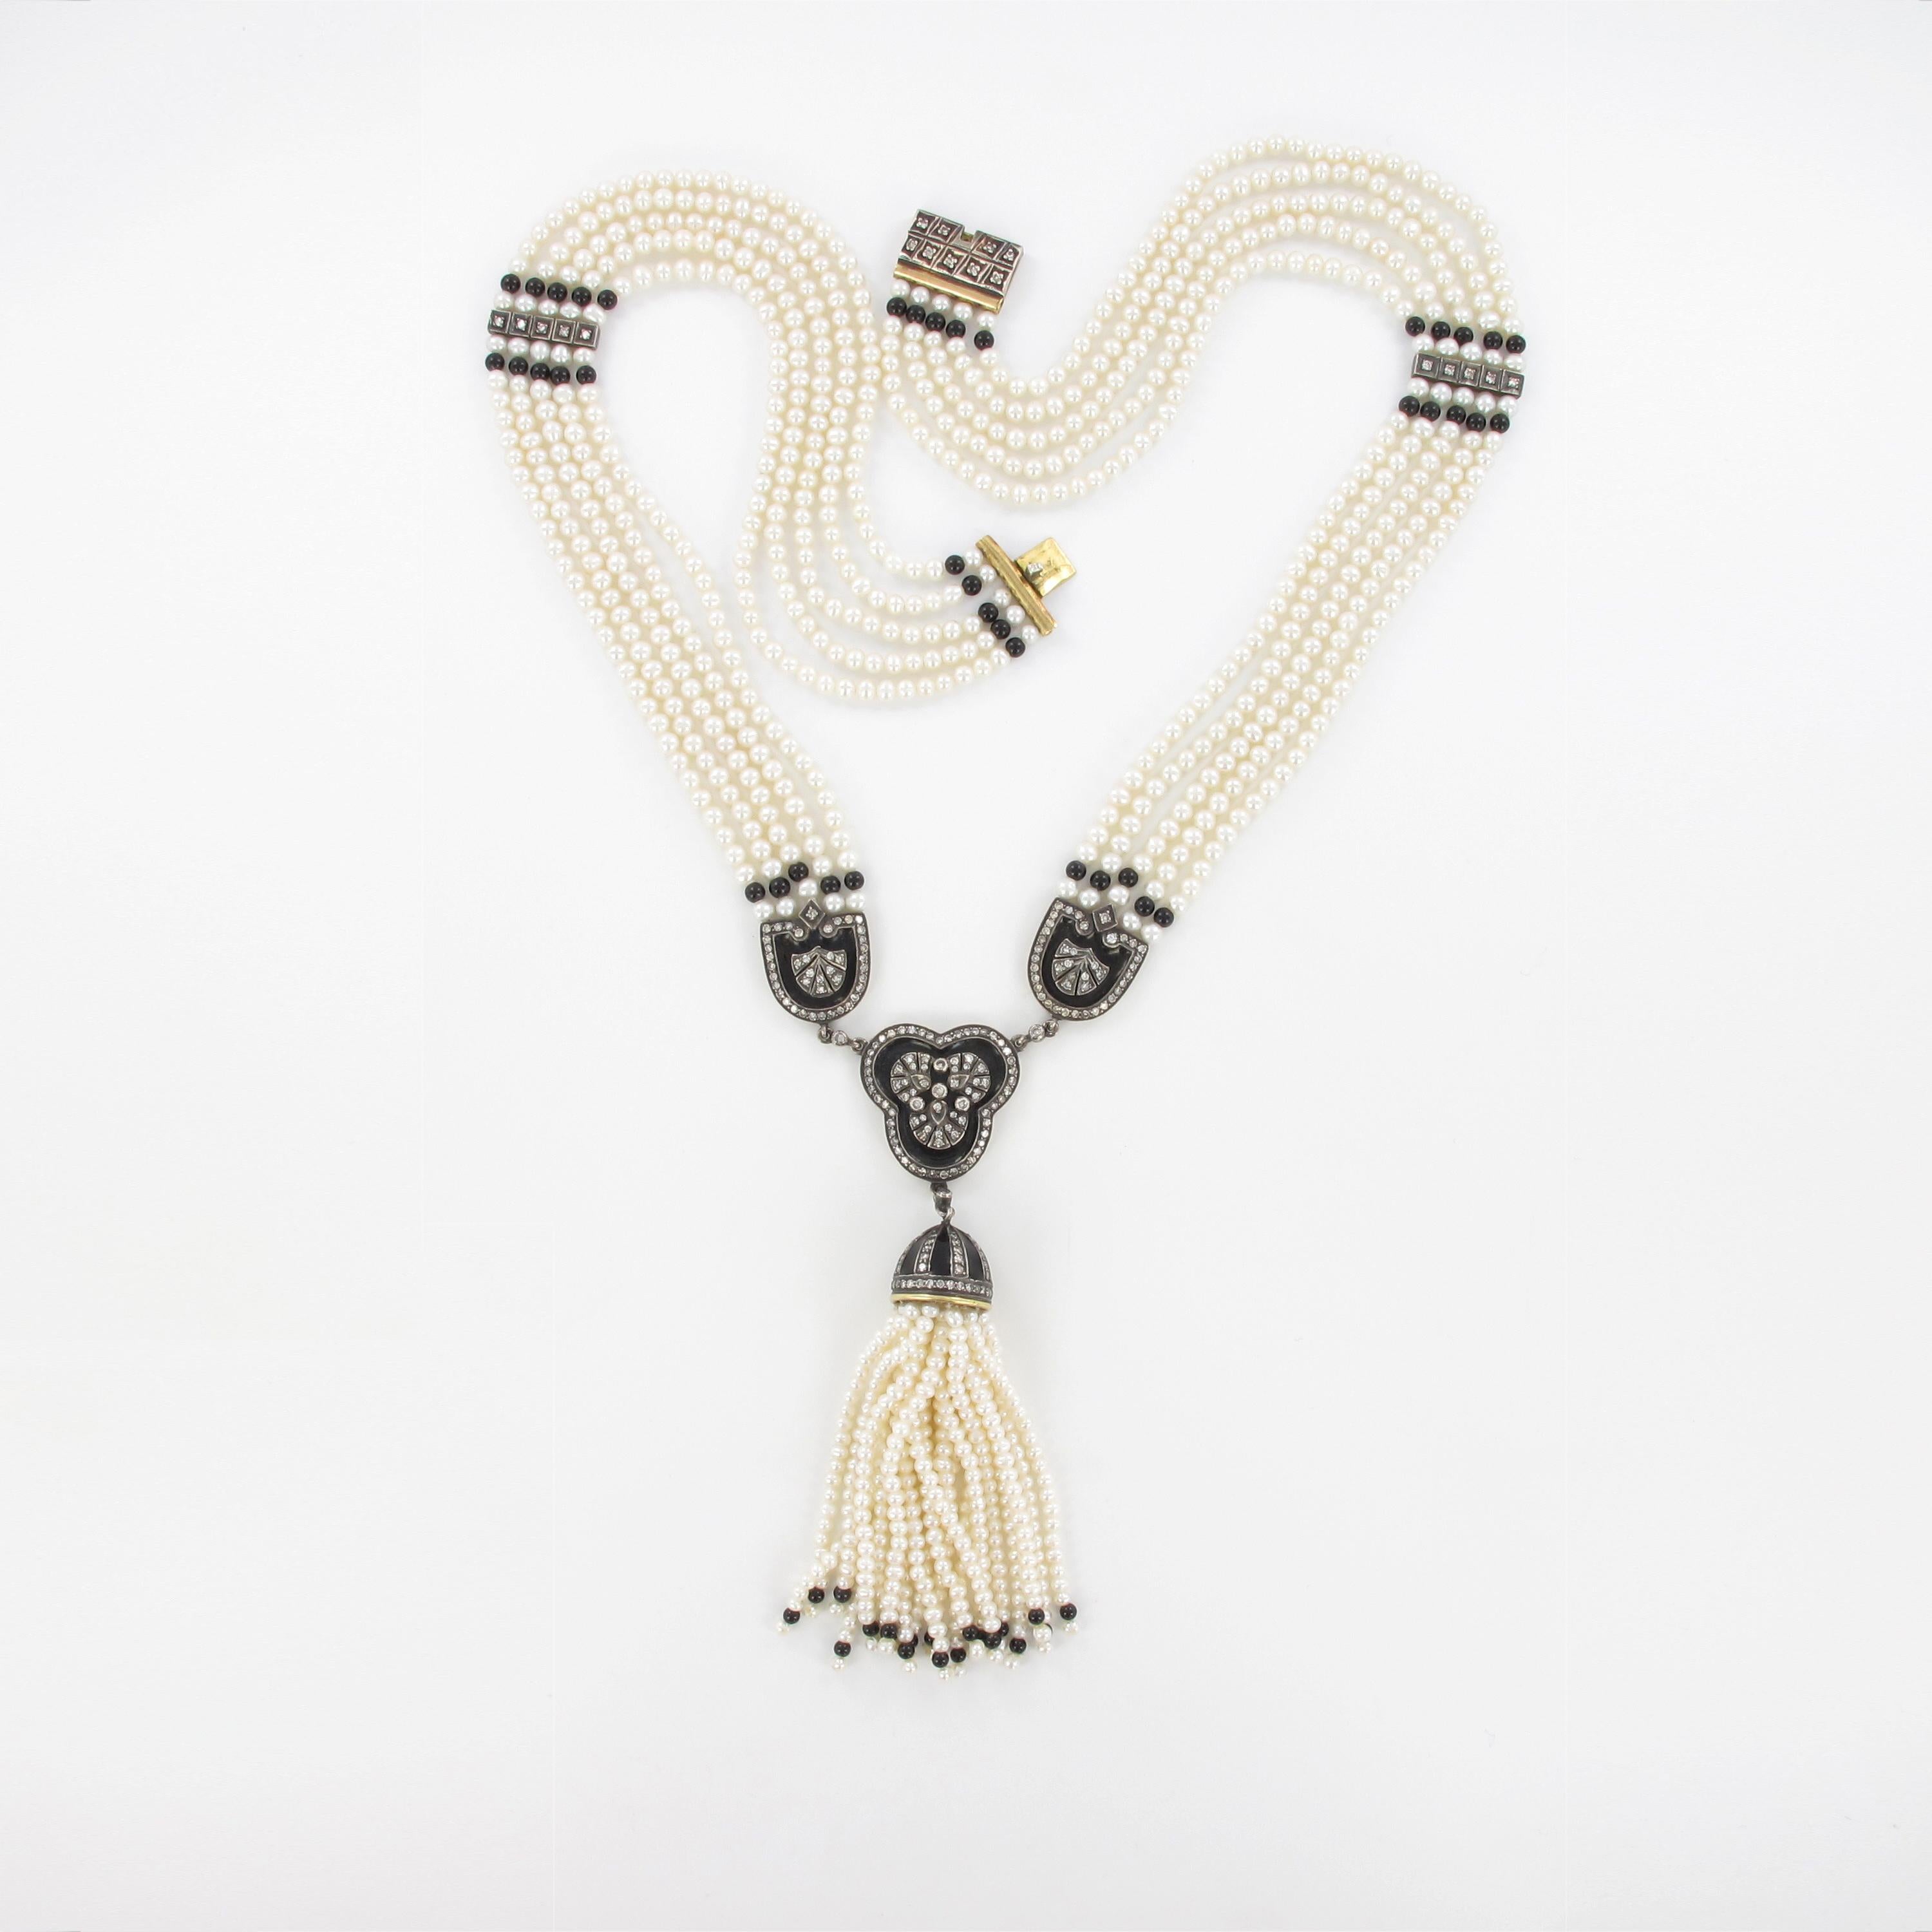 Ce collier très décoratif et romantique est composé de 5 rangs de perles de culture et de perles de calcédoine noire dont le diamètre varie de 3,2 à 3,7 mm. Le centre est décoré d'un gland qui se balance joyeusement, composé de 20 brins plus courts